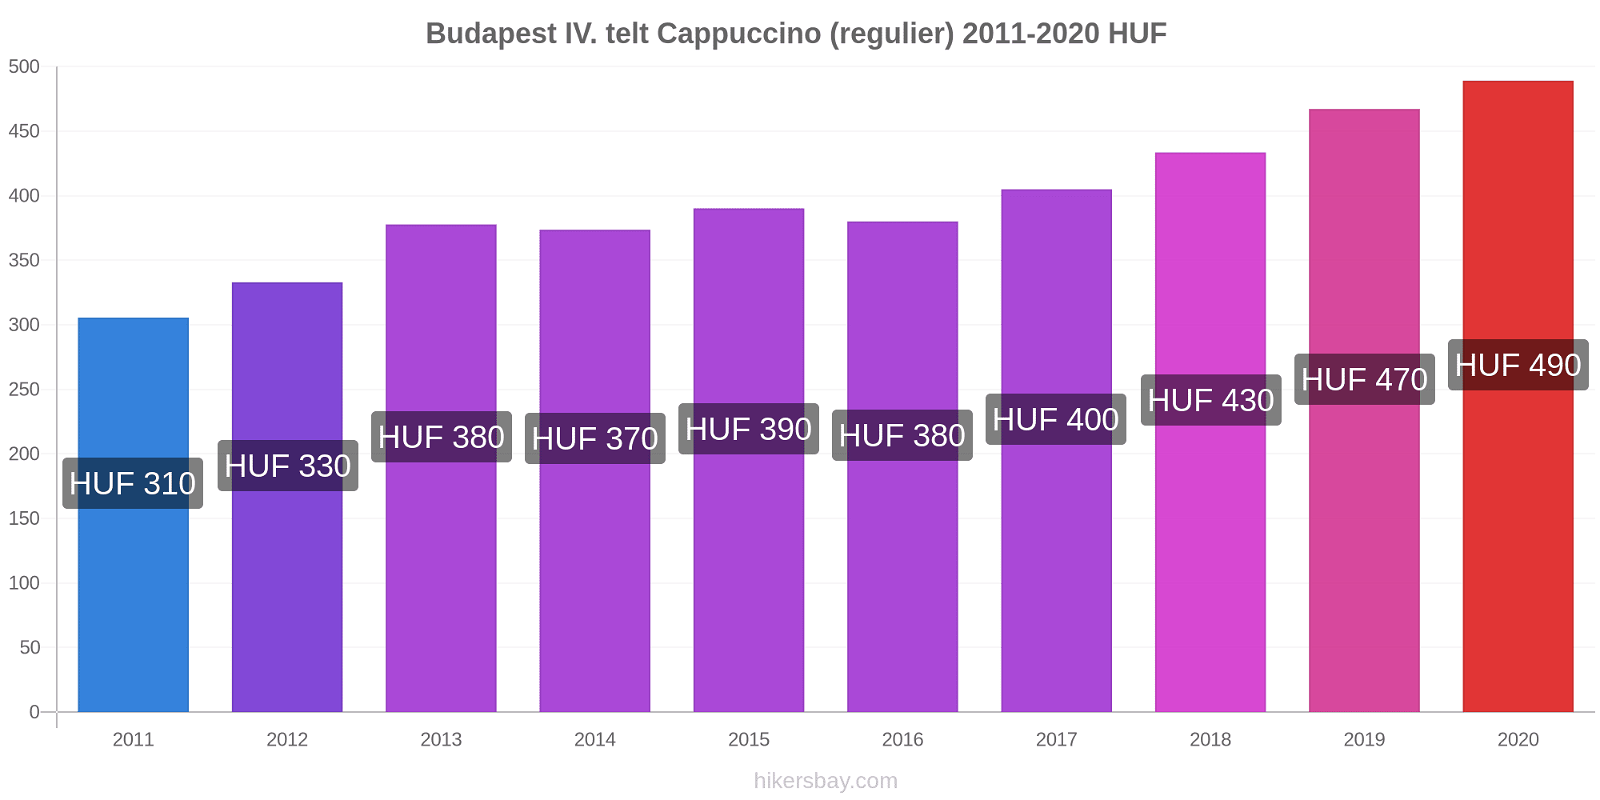 Budapest IV. telt prijswijzigingen Cappuccino (regelmatige) hikersbay.com